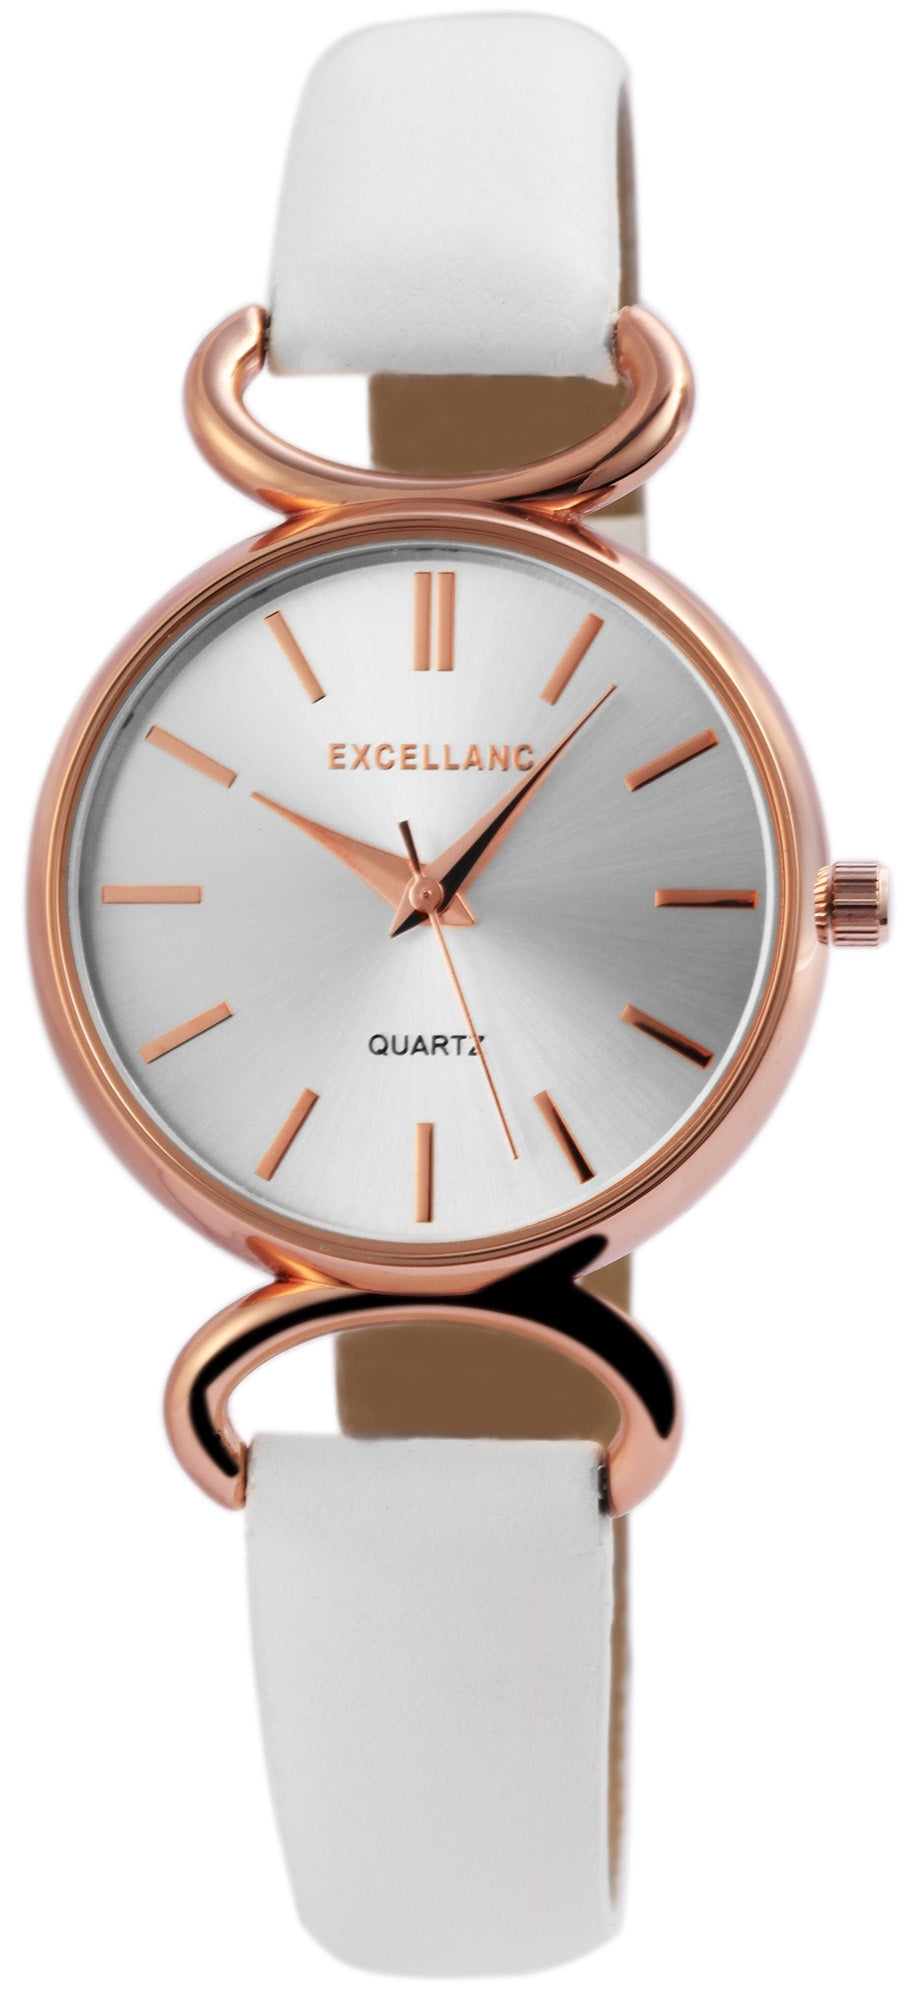 Excellanc dámské hodinky s řemínkem z imitace kůže EX0484, barva růžového zlata, ciferník stříbrné barvy